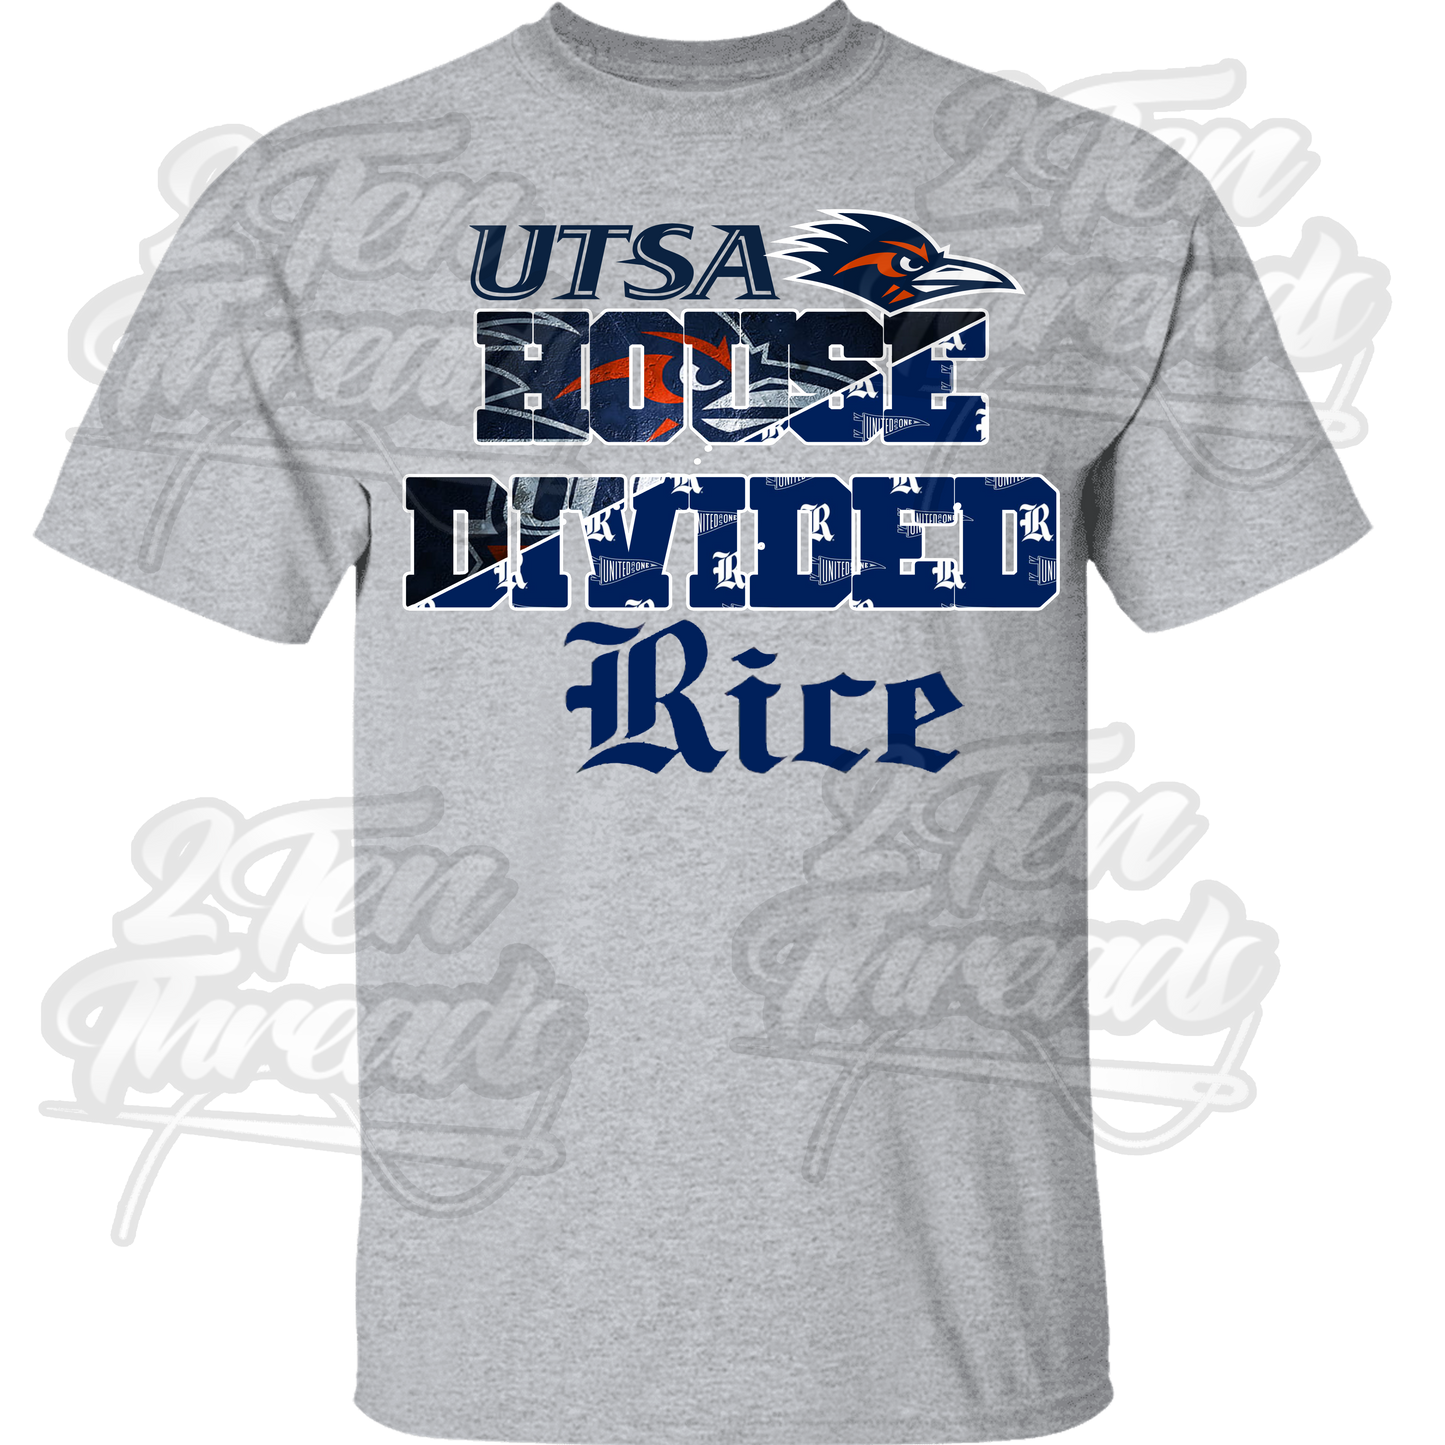 UTSA / Rice House divided Shirt